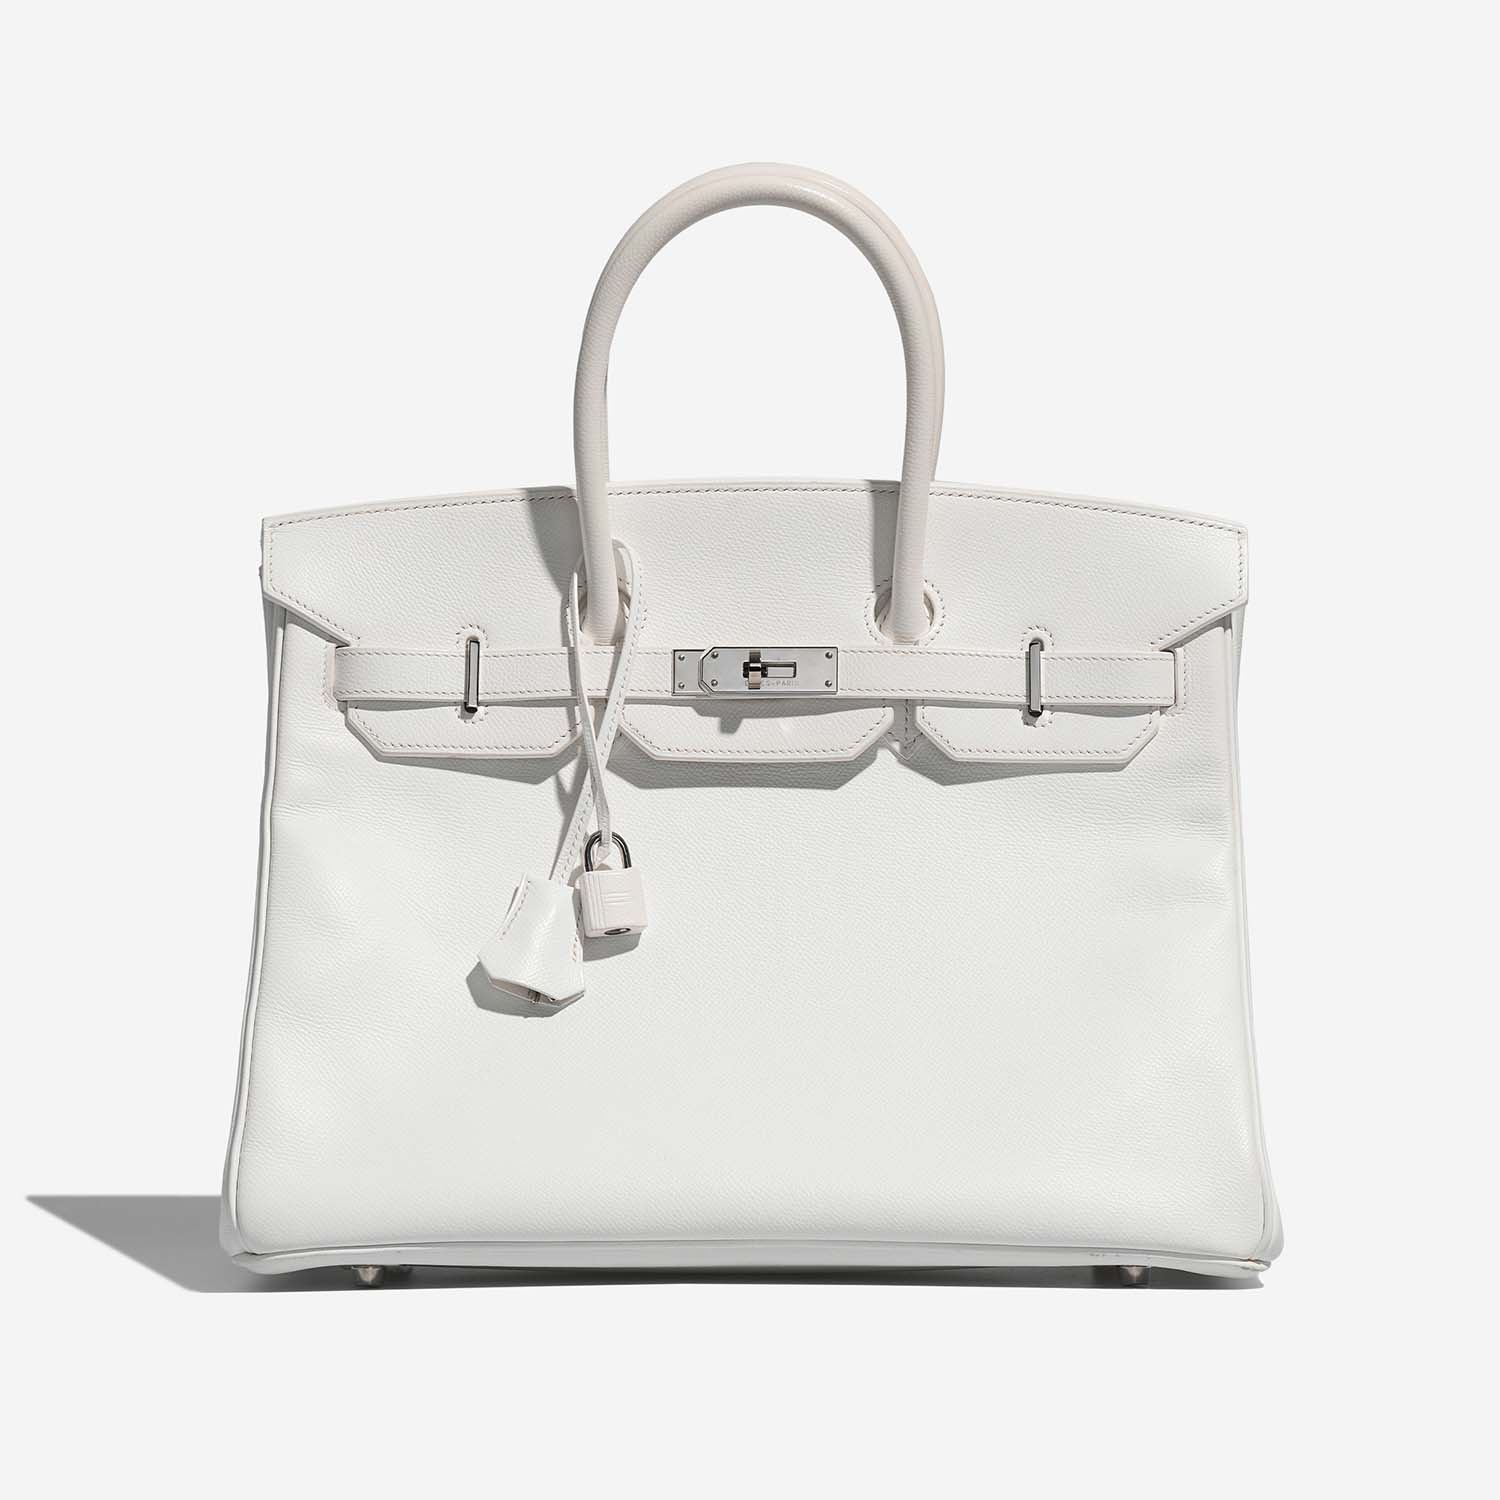 Hermès Birkin 35 White Front | Verkaufen Sie Ihre Designer-Tasche auf Saclab.com